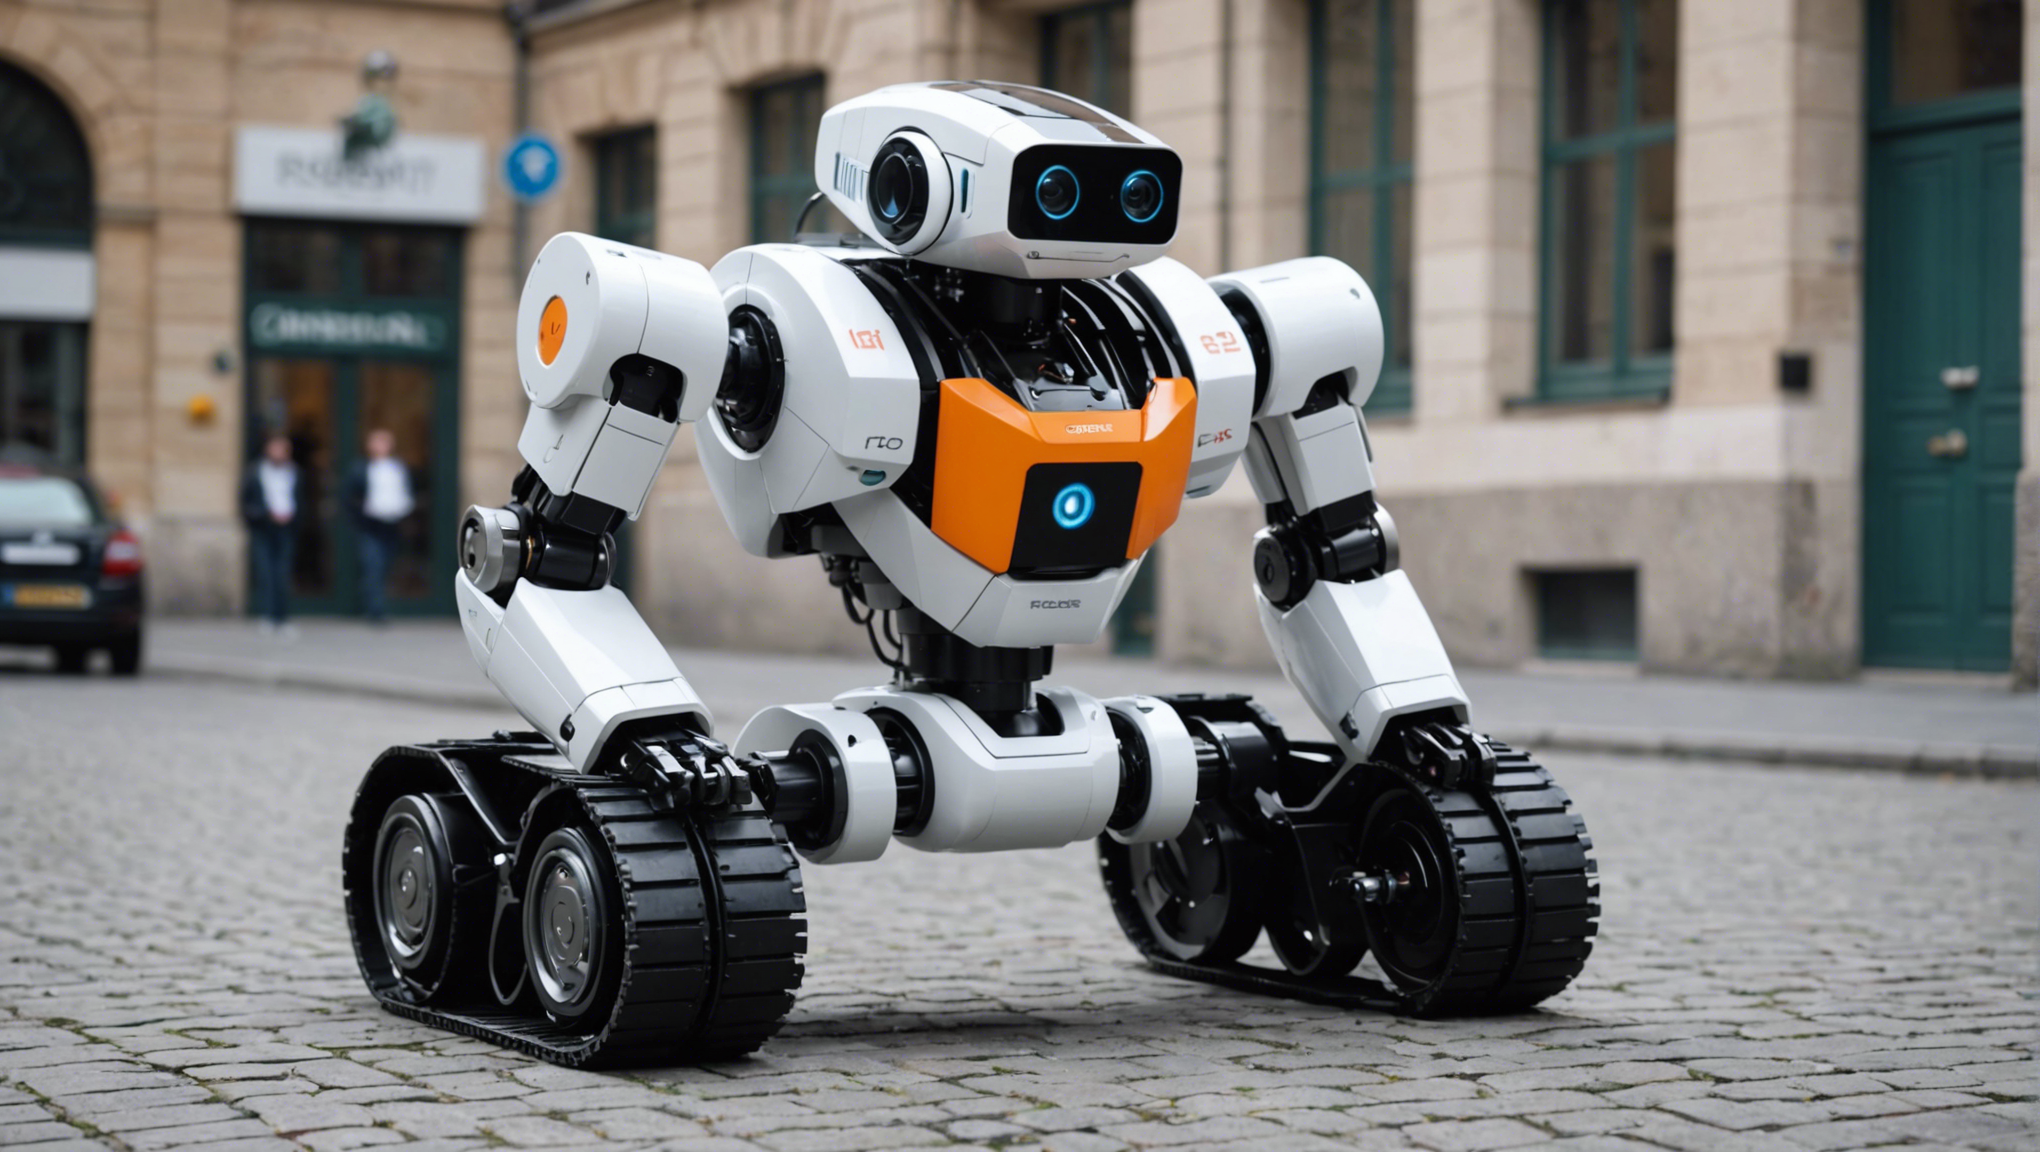 découvrez le blog de génération robots : toute l'actualité de la robotique pour les professionnels, l'éducation, la recherche et les passionnés. restez informé sur les dernières avancées et tendances de la robotique.